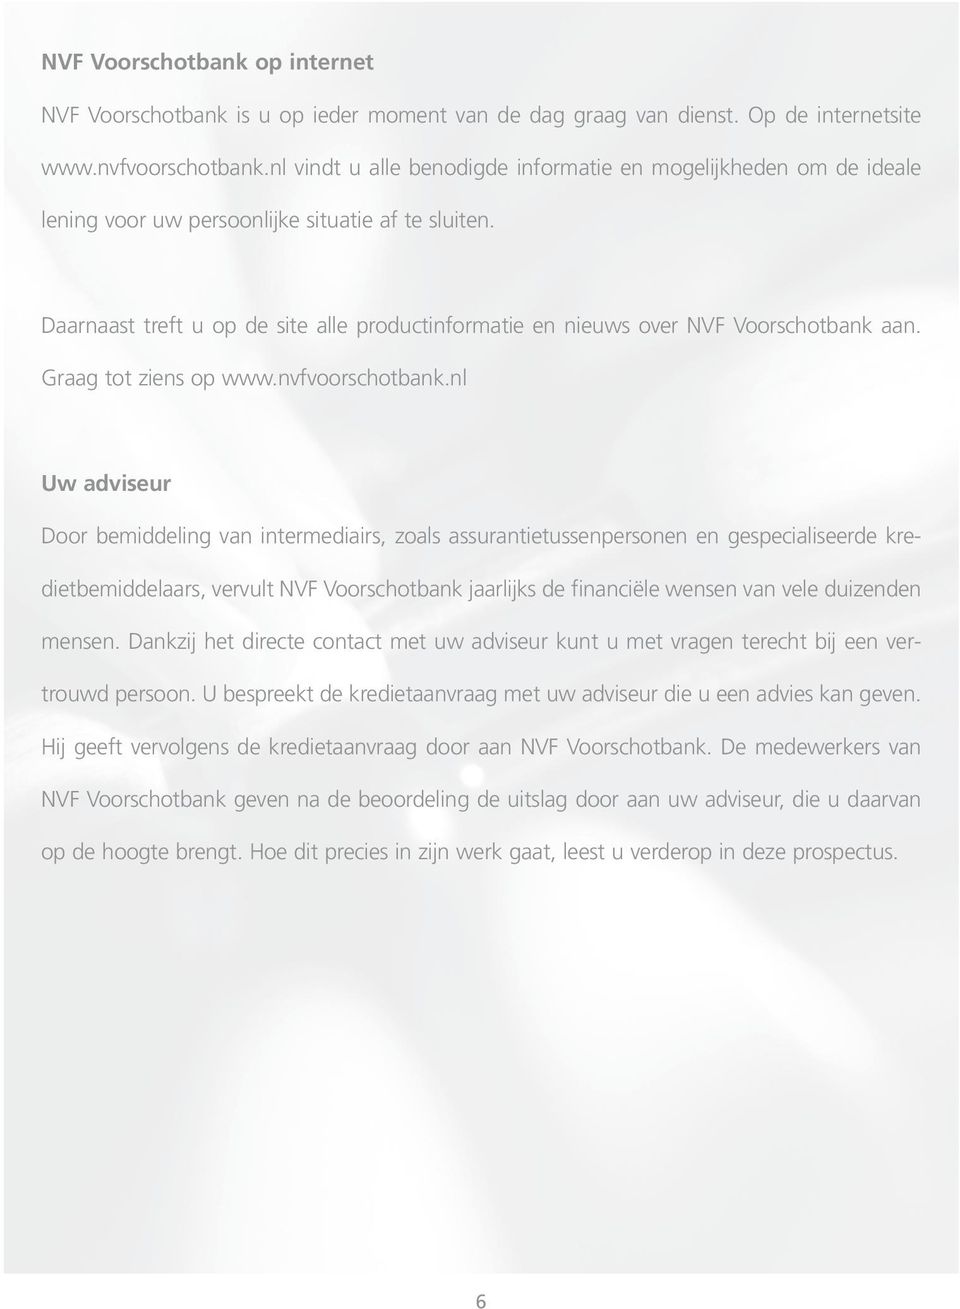 Daarnaast treft u op de site alle productinformatie en nieuws over NVF Voorschotbank aan. Graag tot ziens op www.nvfvoorschotbank.